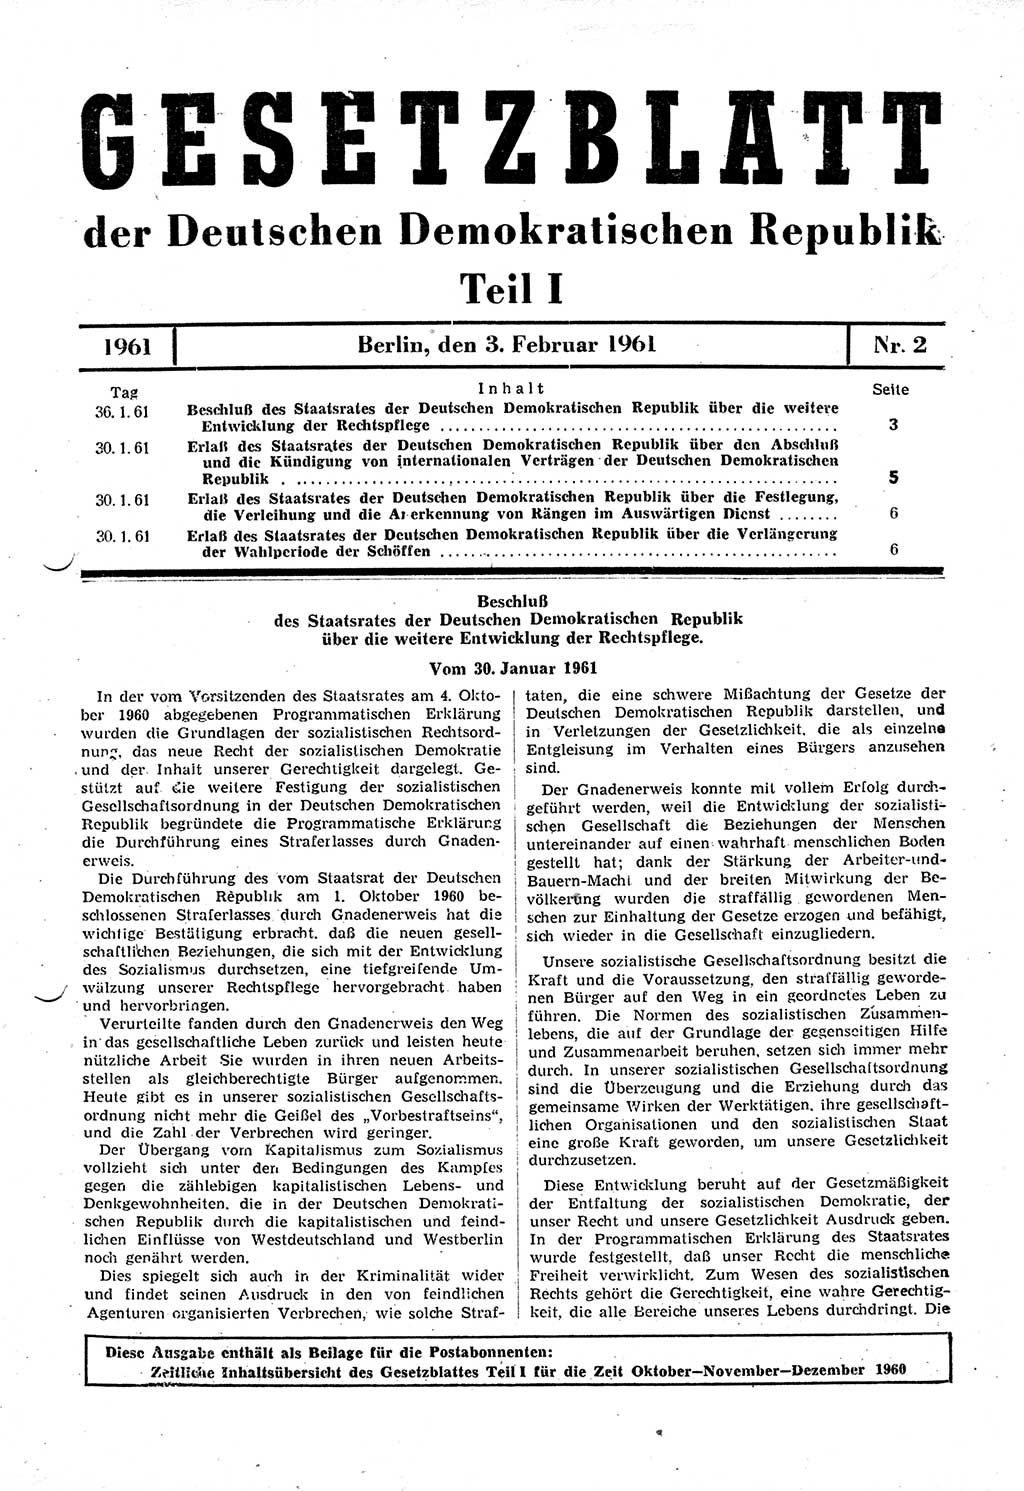 Gesetzblatt (GBl.) der Deutschen Demokratischen Republik (DDR) Teil Ⅰ 1961, Seite 3 (GBl. DDR Ⅰ 1961, S. 3)